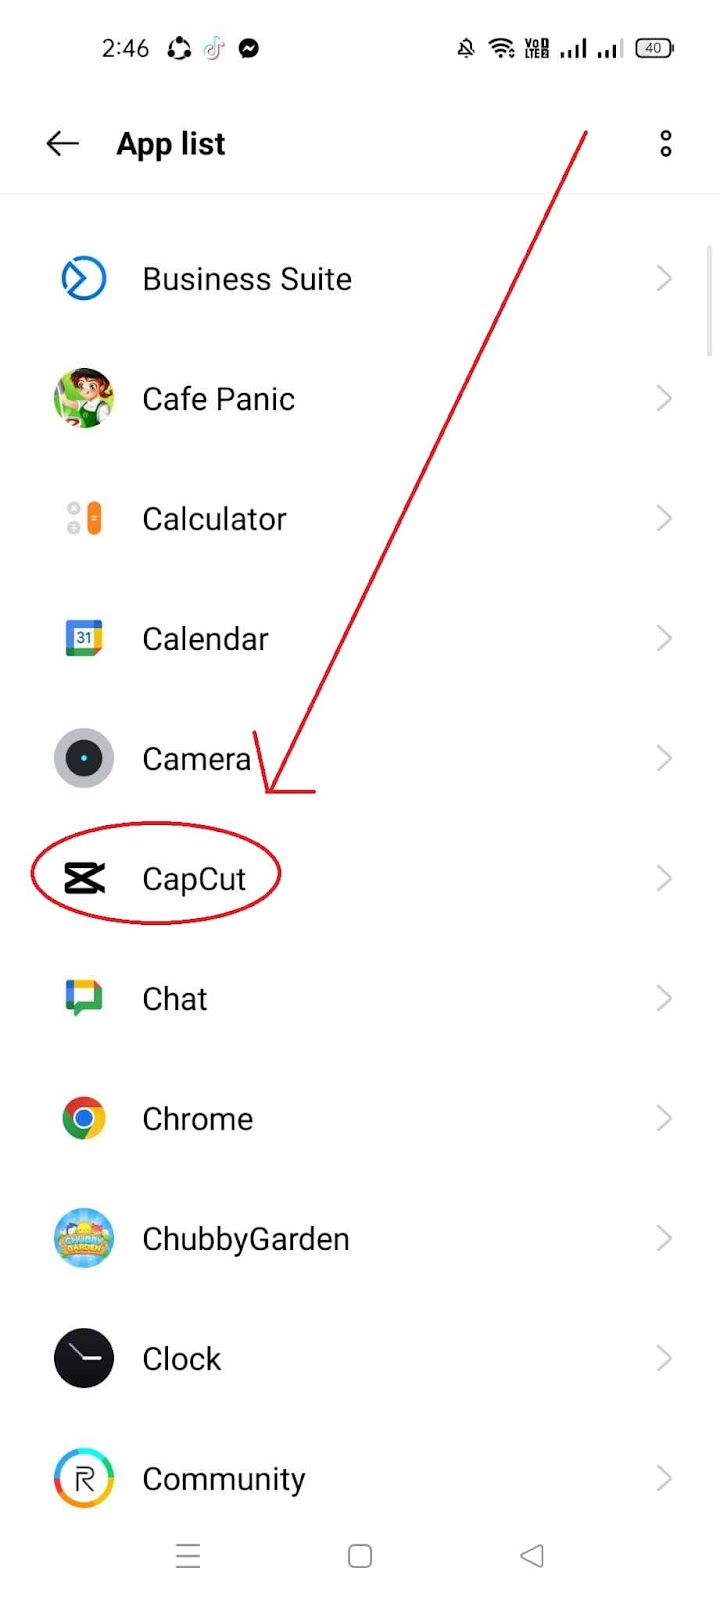 CapCut Audio Delay How to Fix - Click CapCut